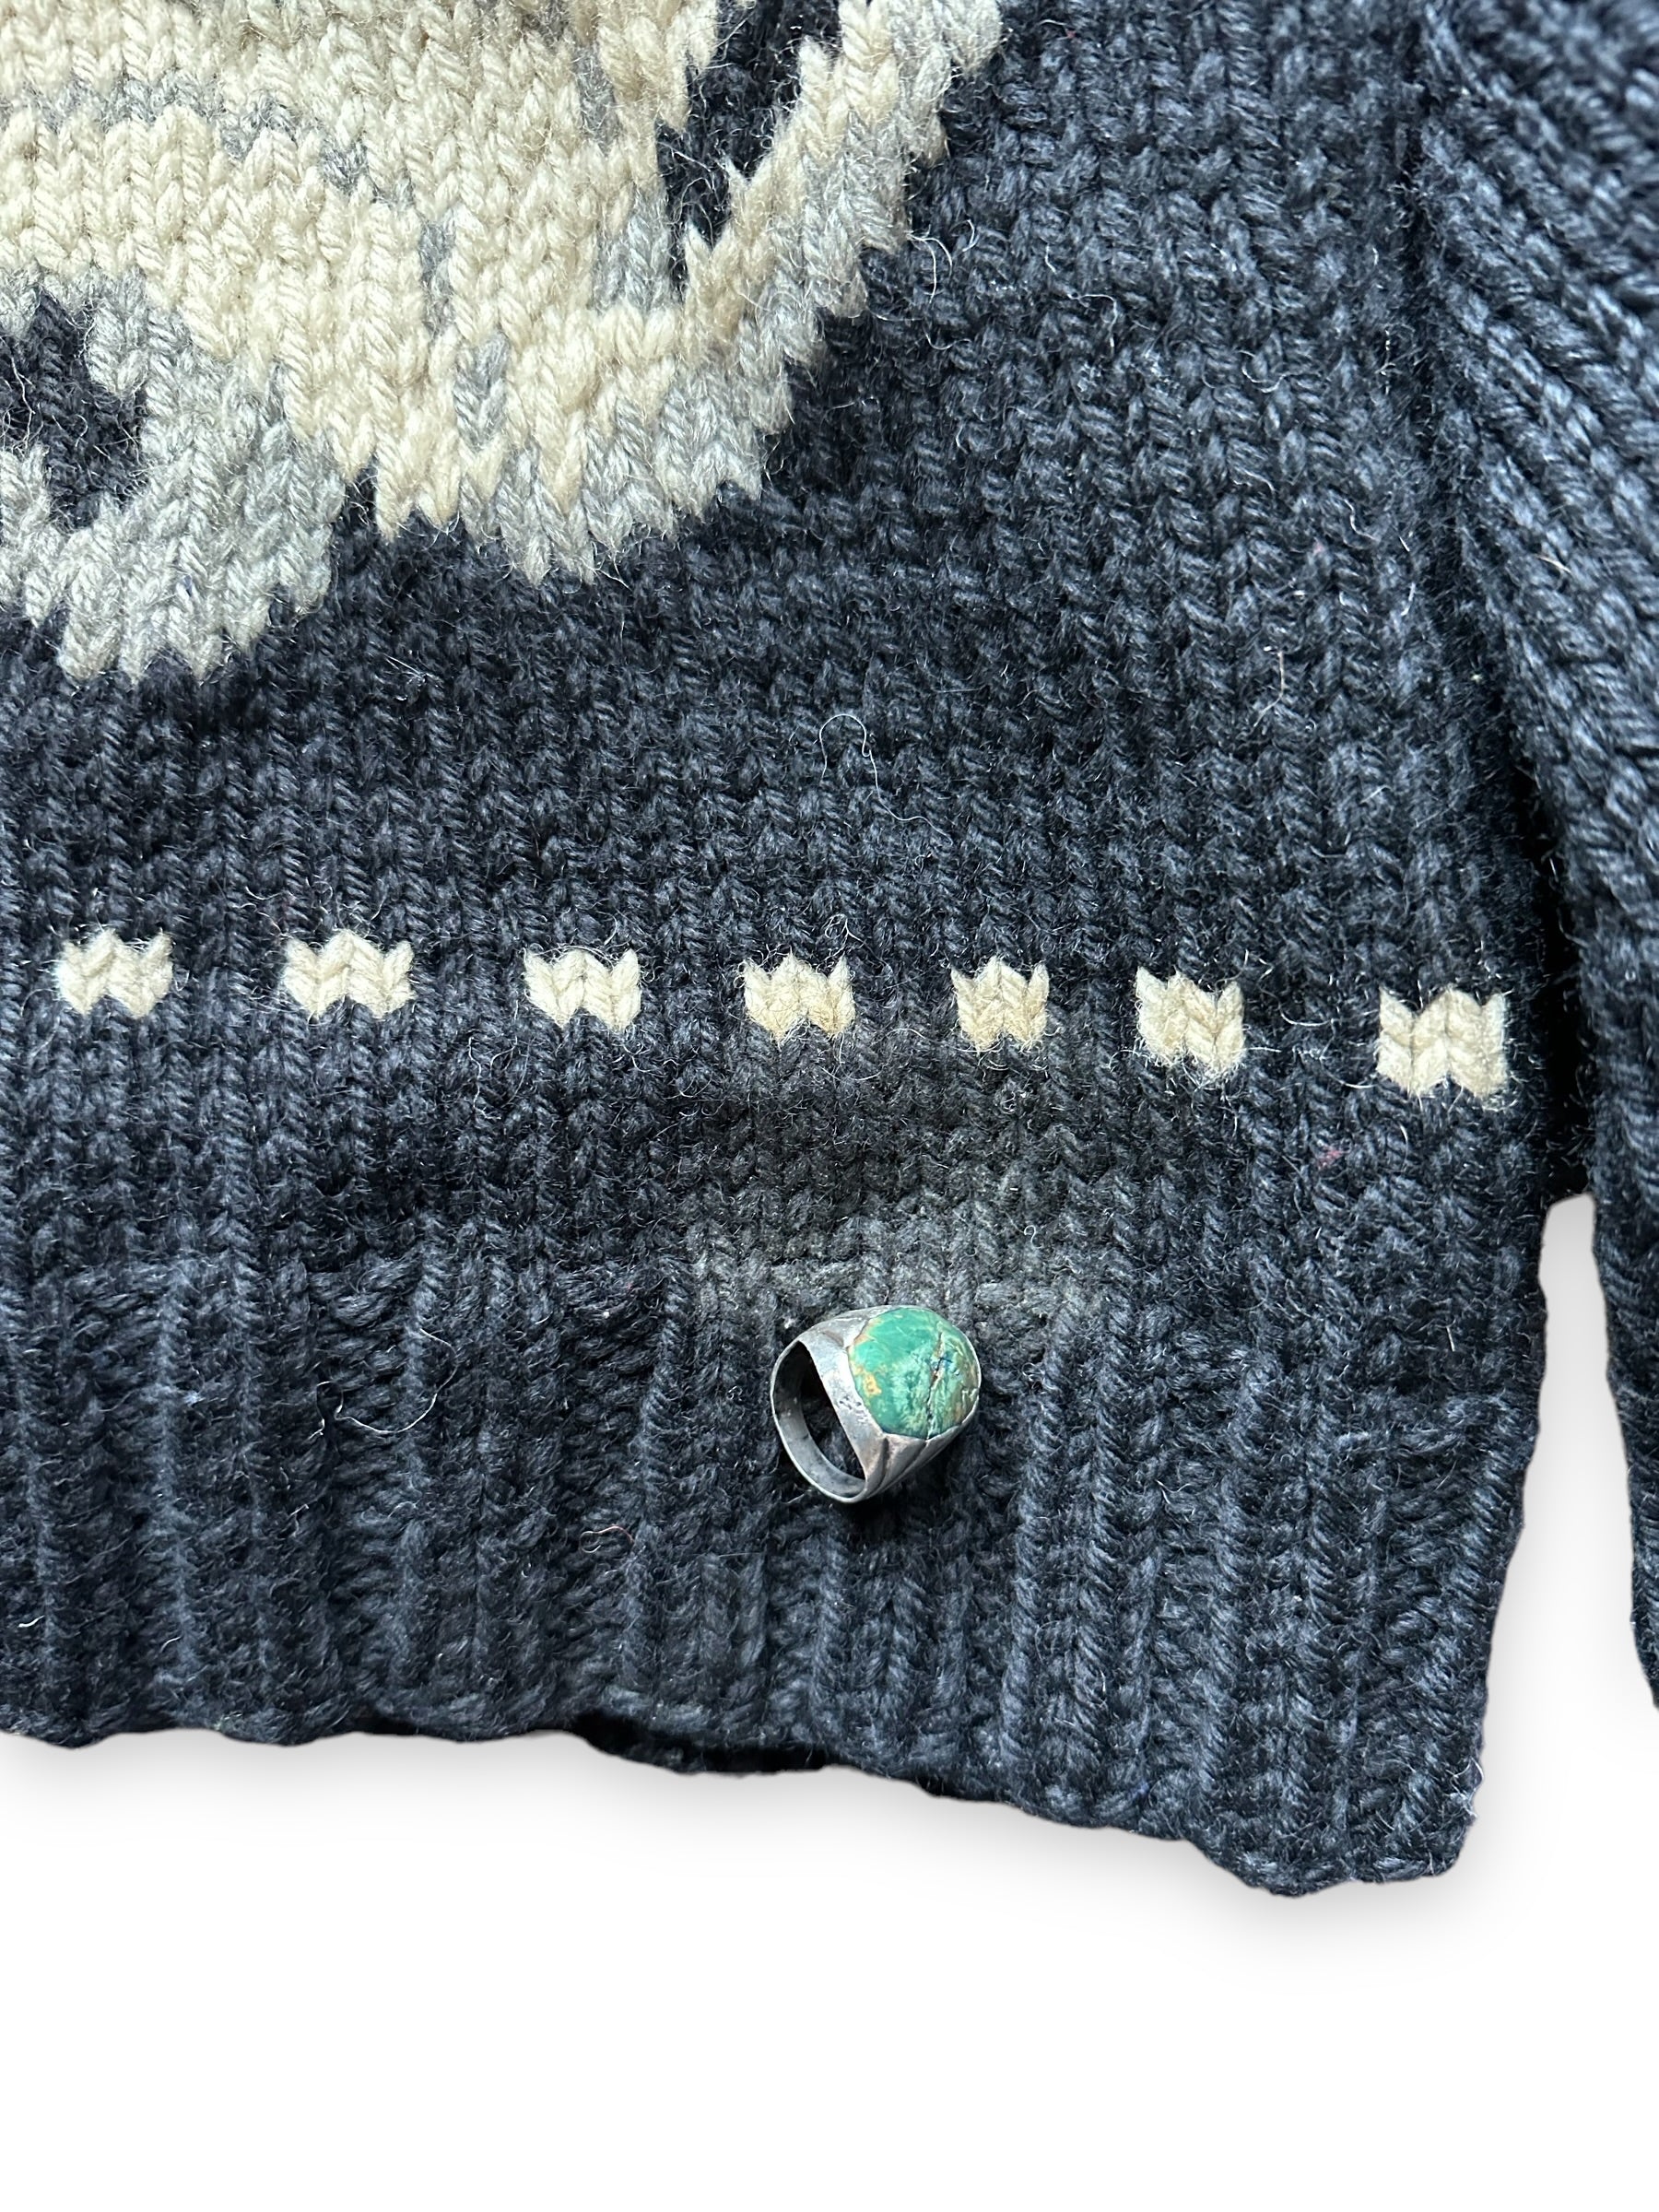 Discolored Rear Portion of Vintage Trucker Wool Cowichan SZ XL |  Vintage Cowichan Sweaters Seattle | Barn Owl Vintage Seattle